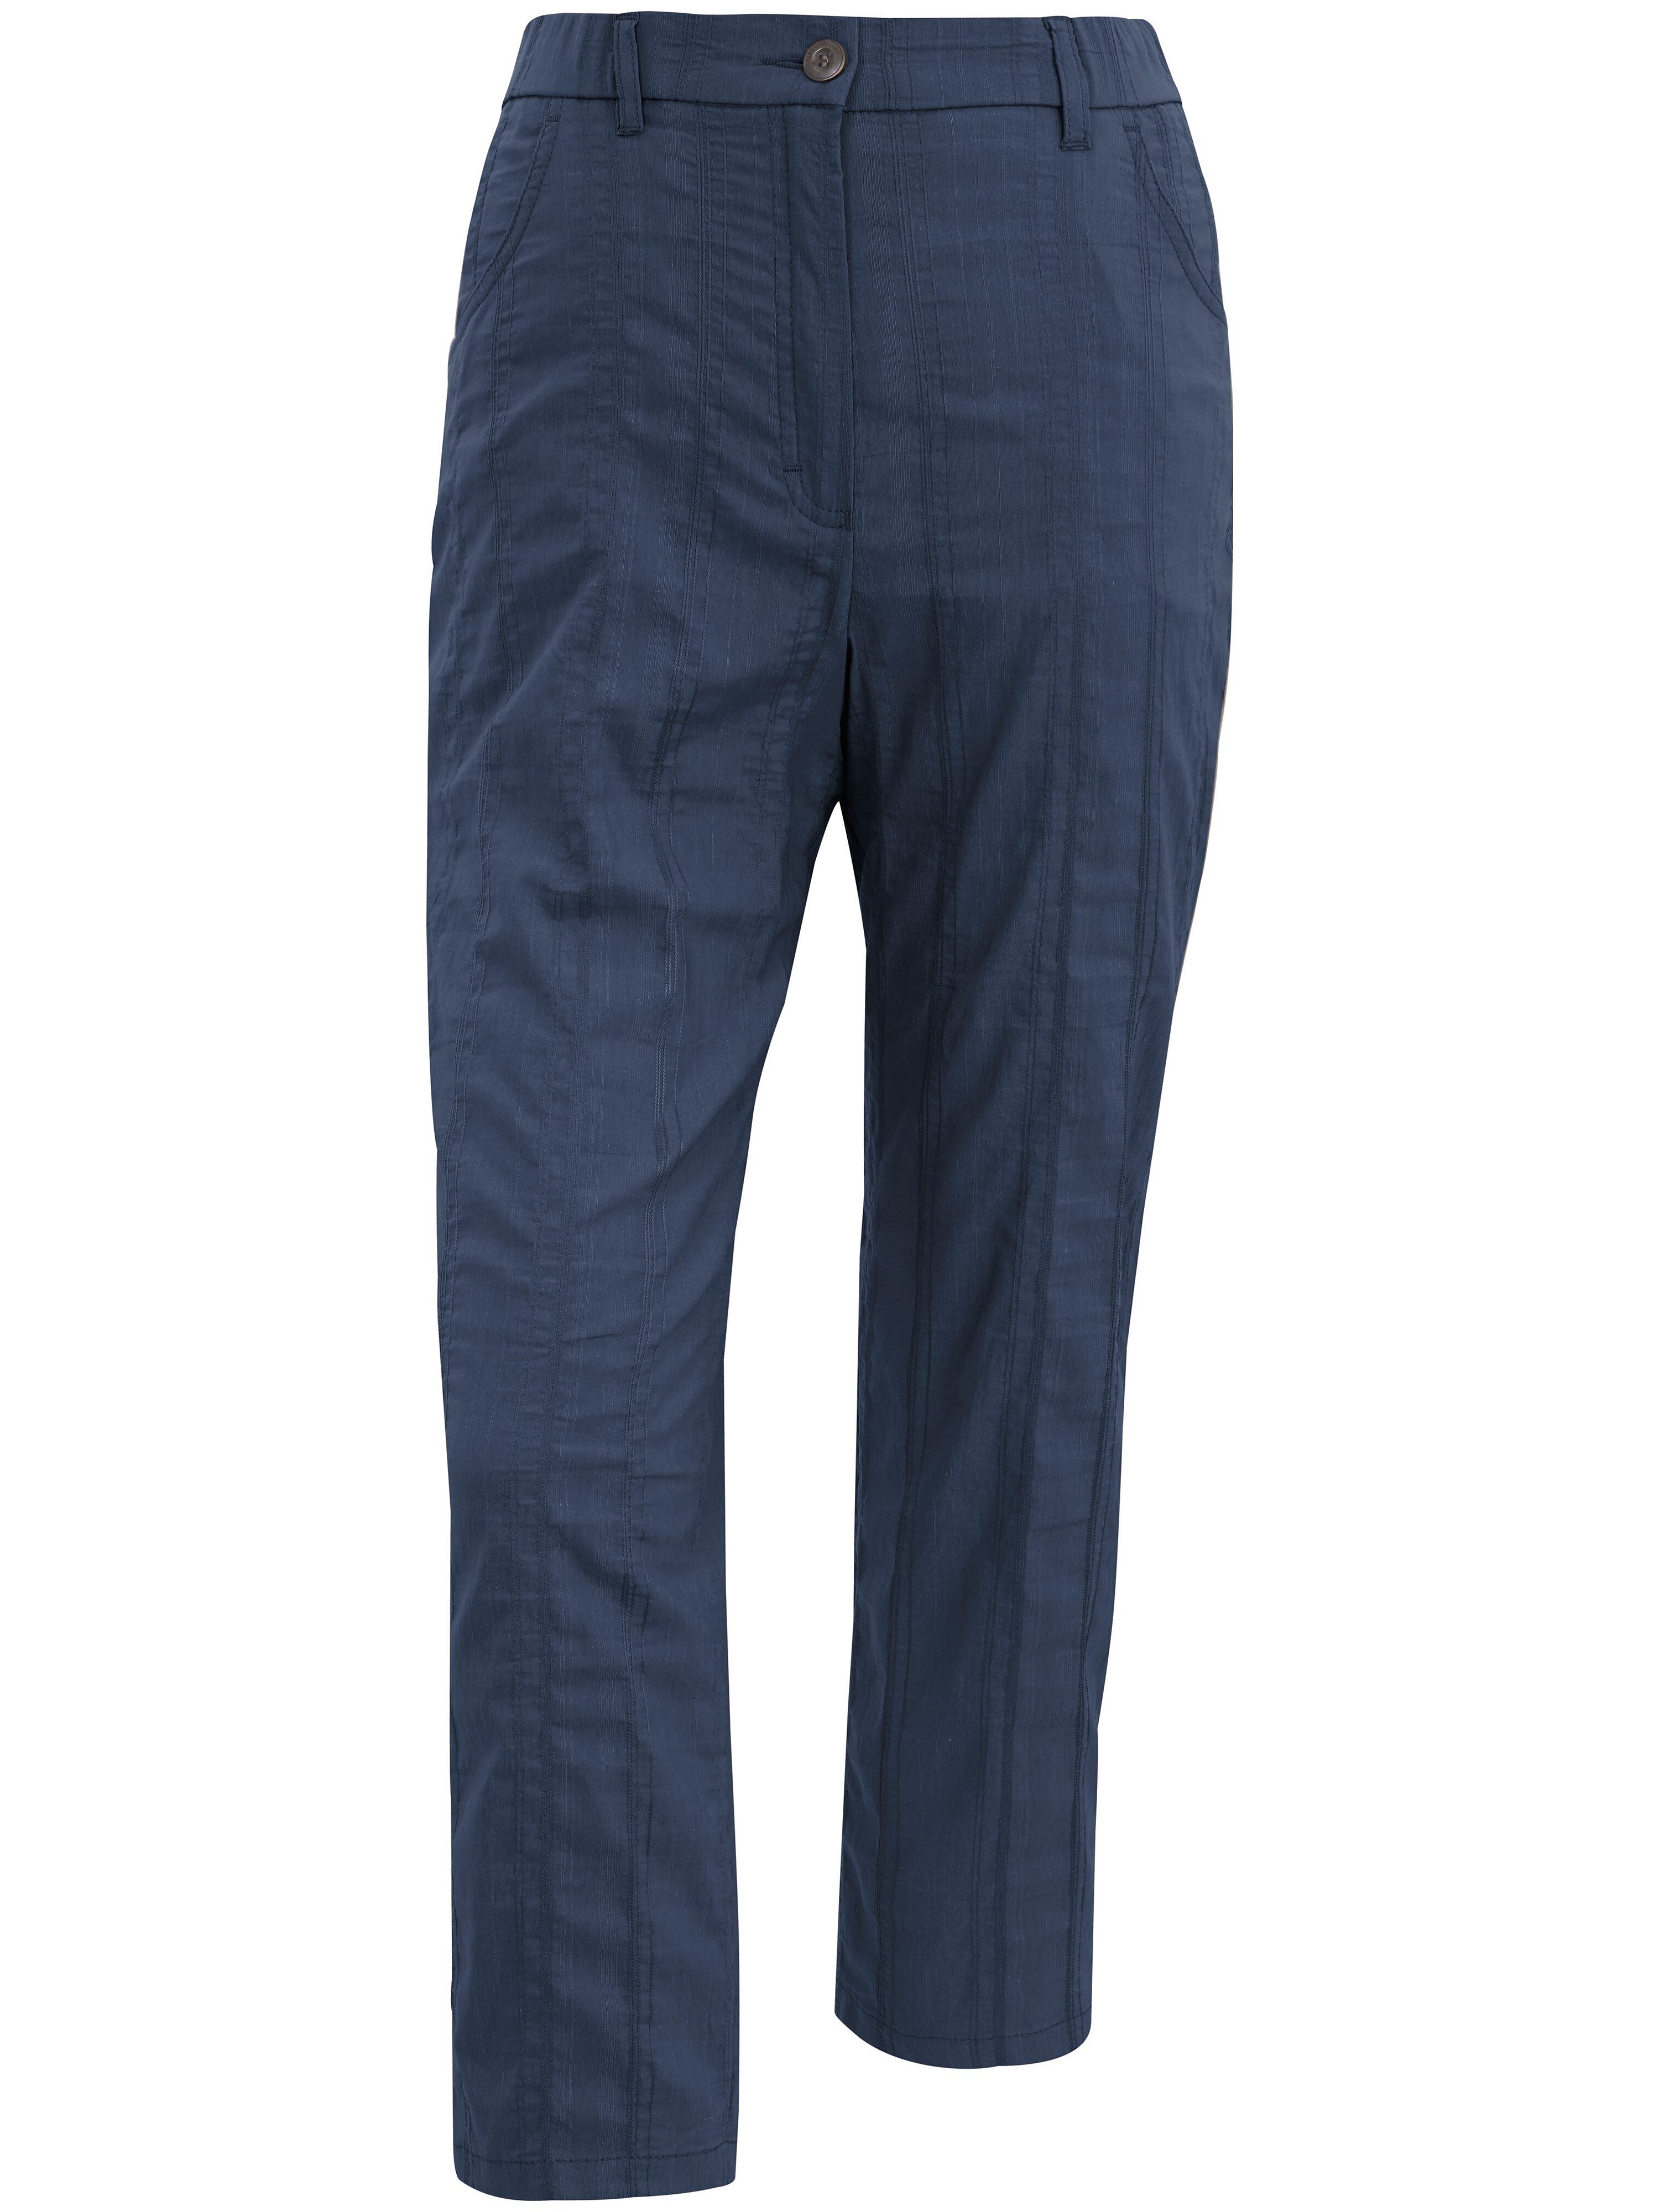 Le pantalon 7/8  KjBrand bleu taille 50